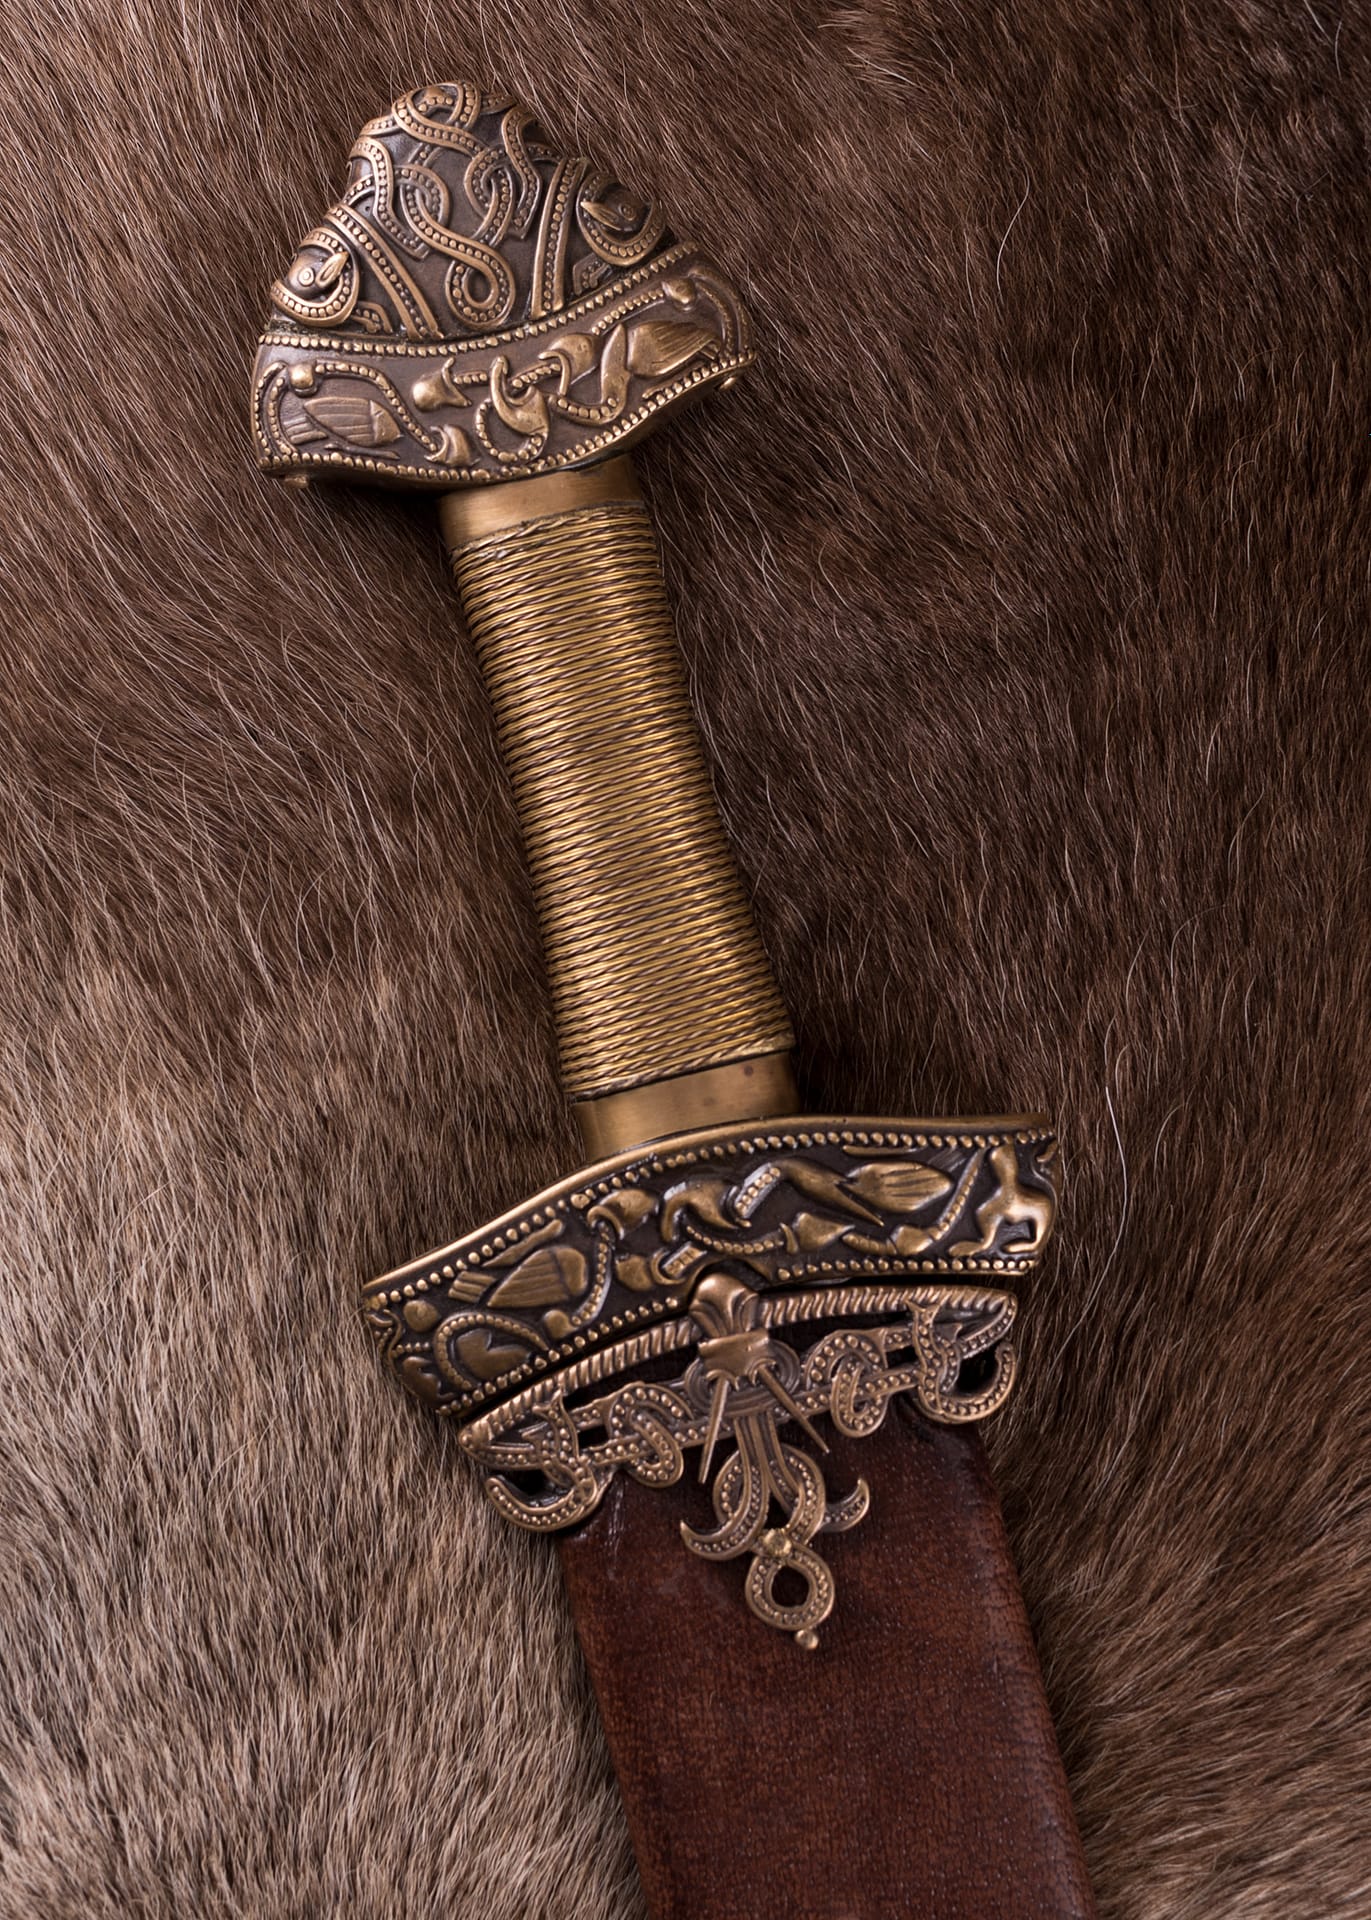 Espada vikinga hecha de Dybäck con vaina, hoja de acero al carbono endurecido 0116040901 - Espadas y Más